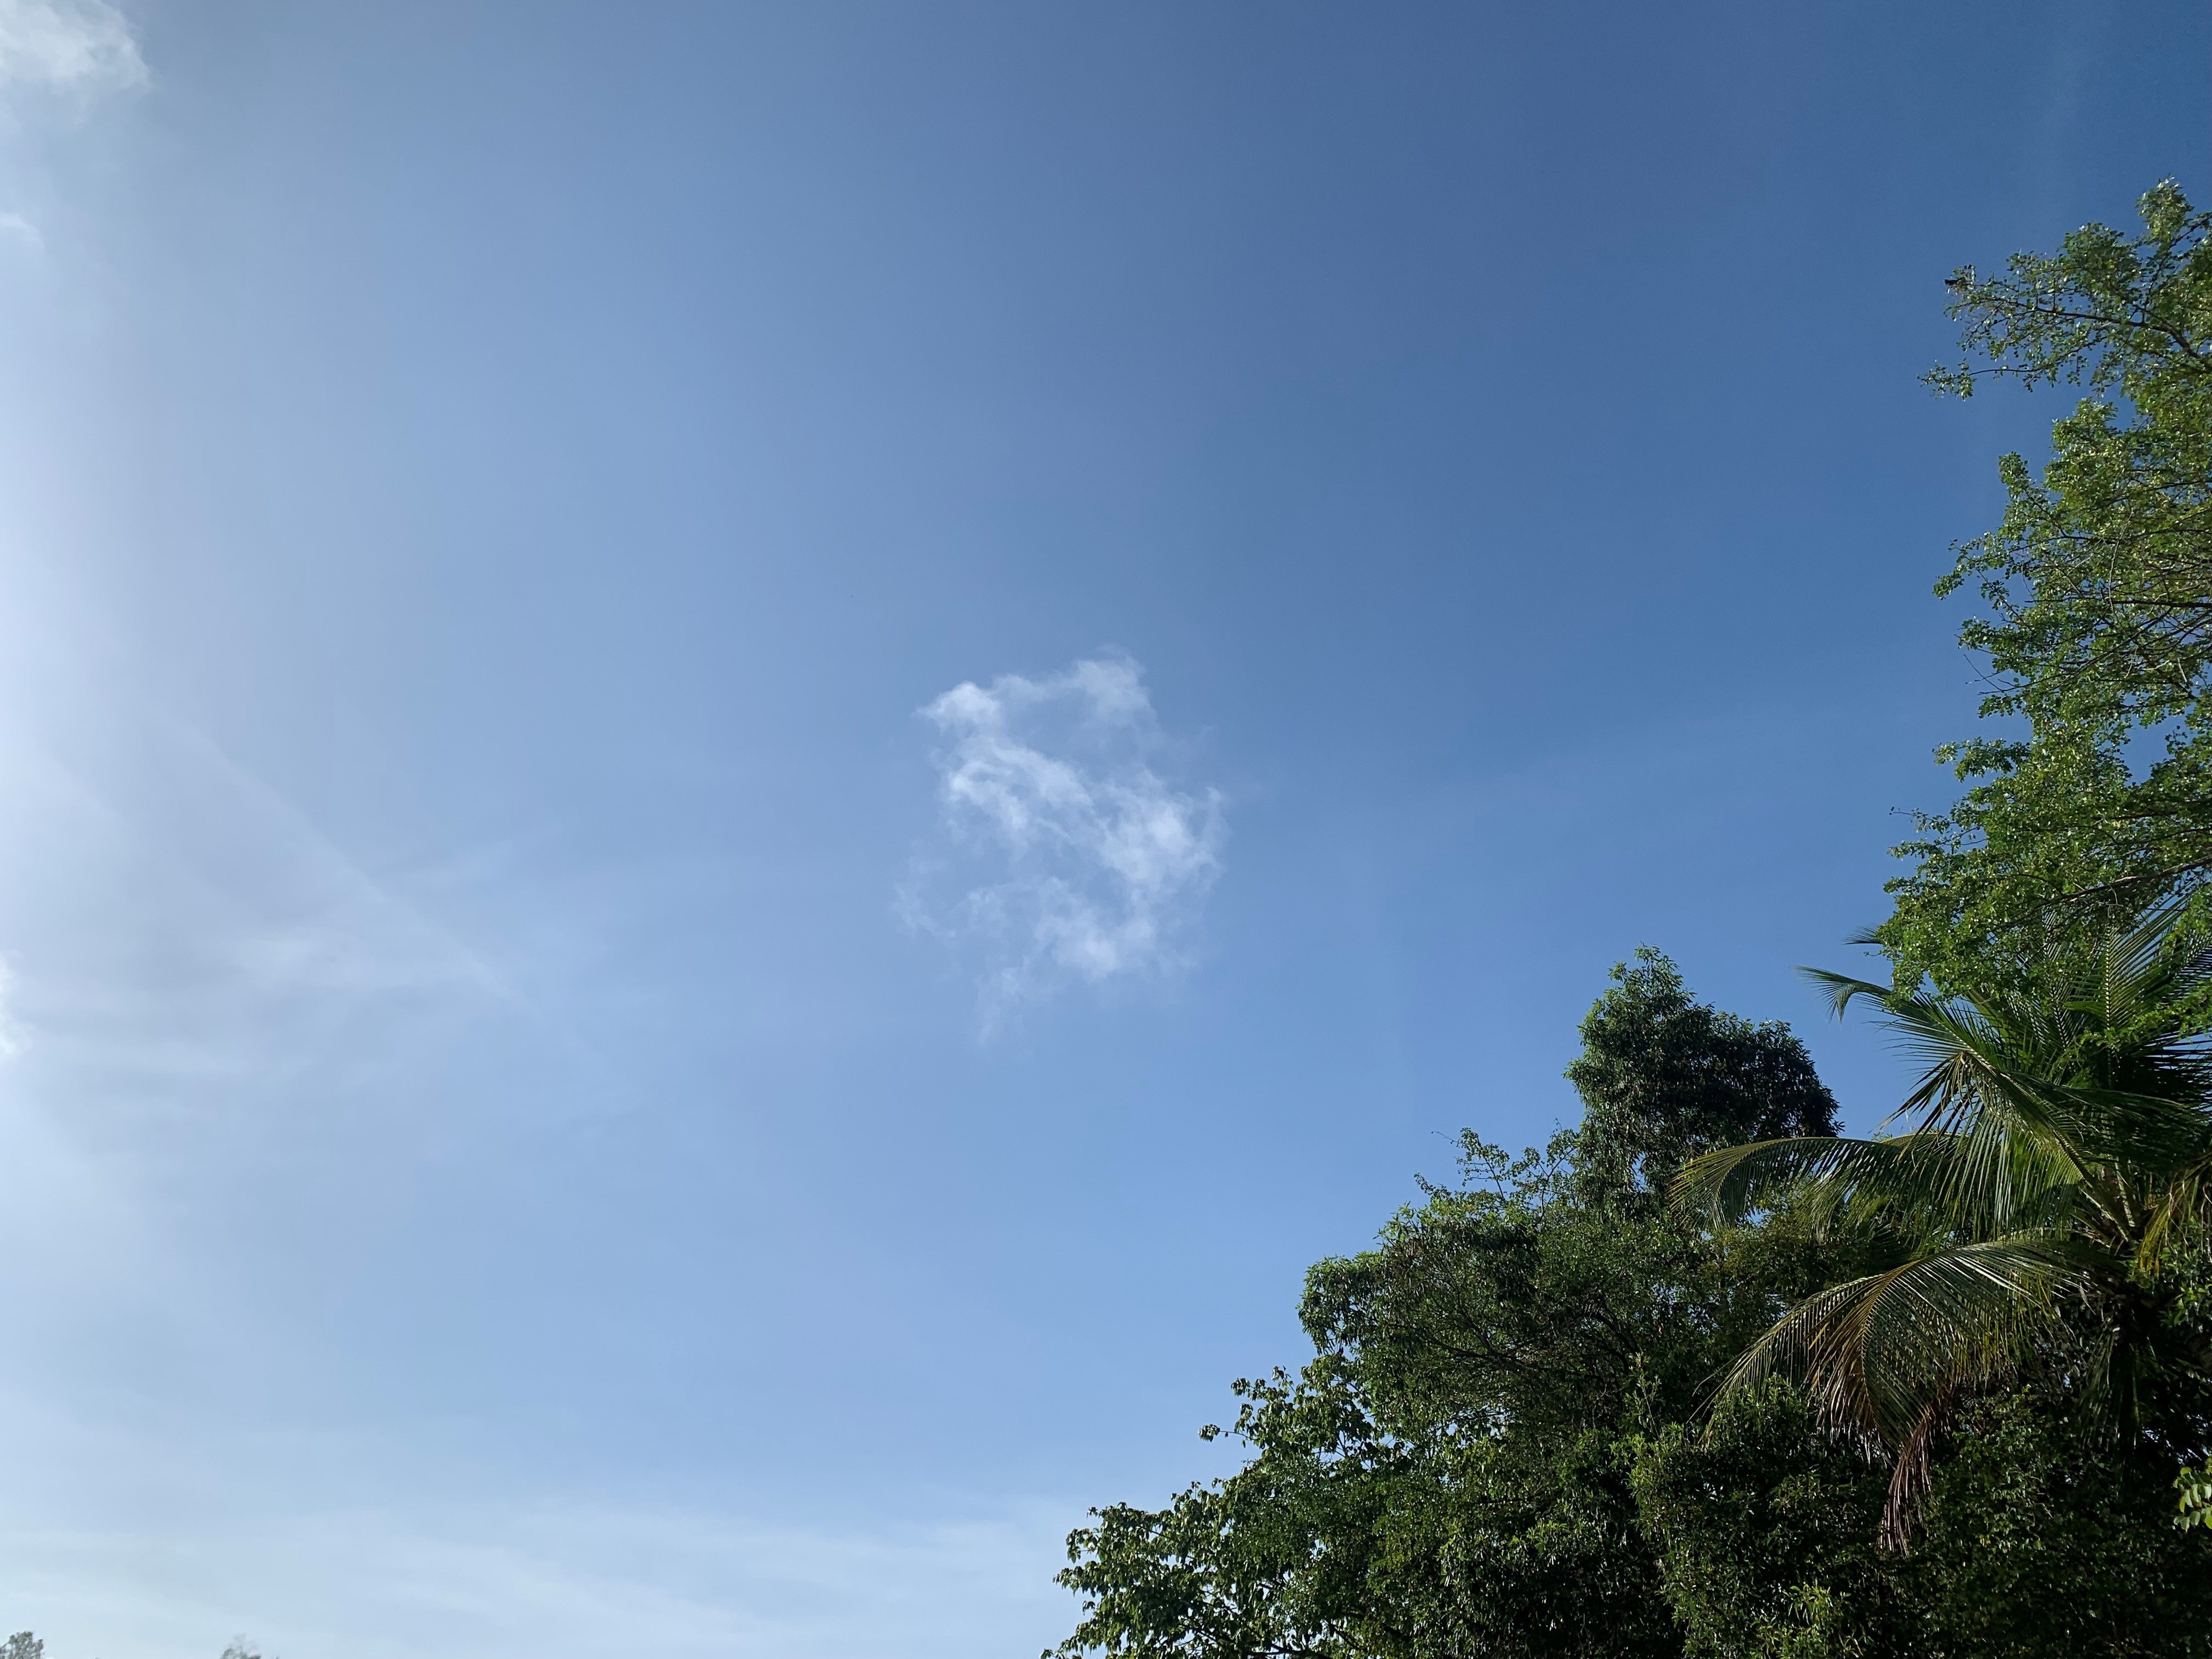     Après la tempête Bret, la Guadeloupe repasse en vigilance verte

